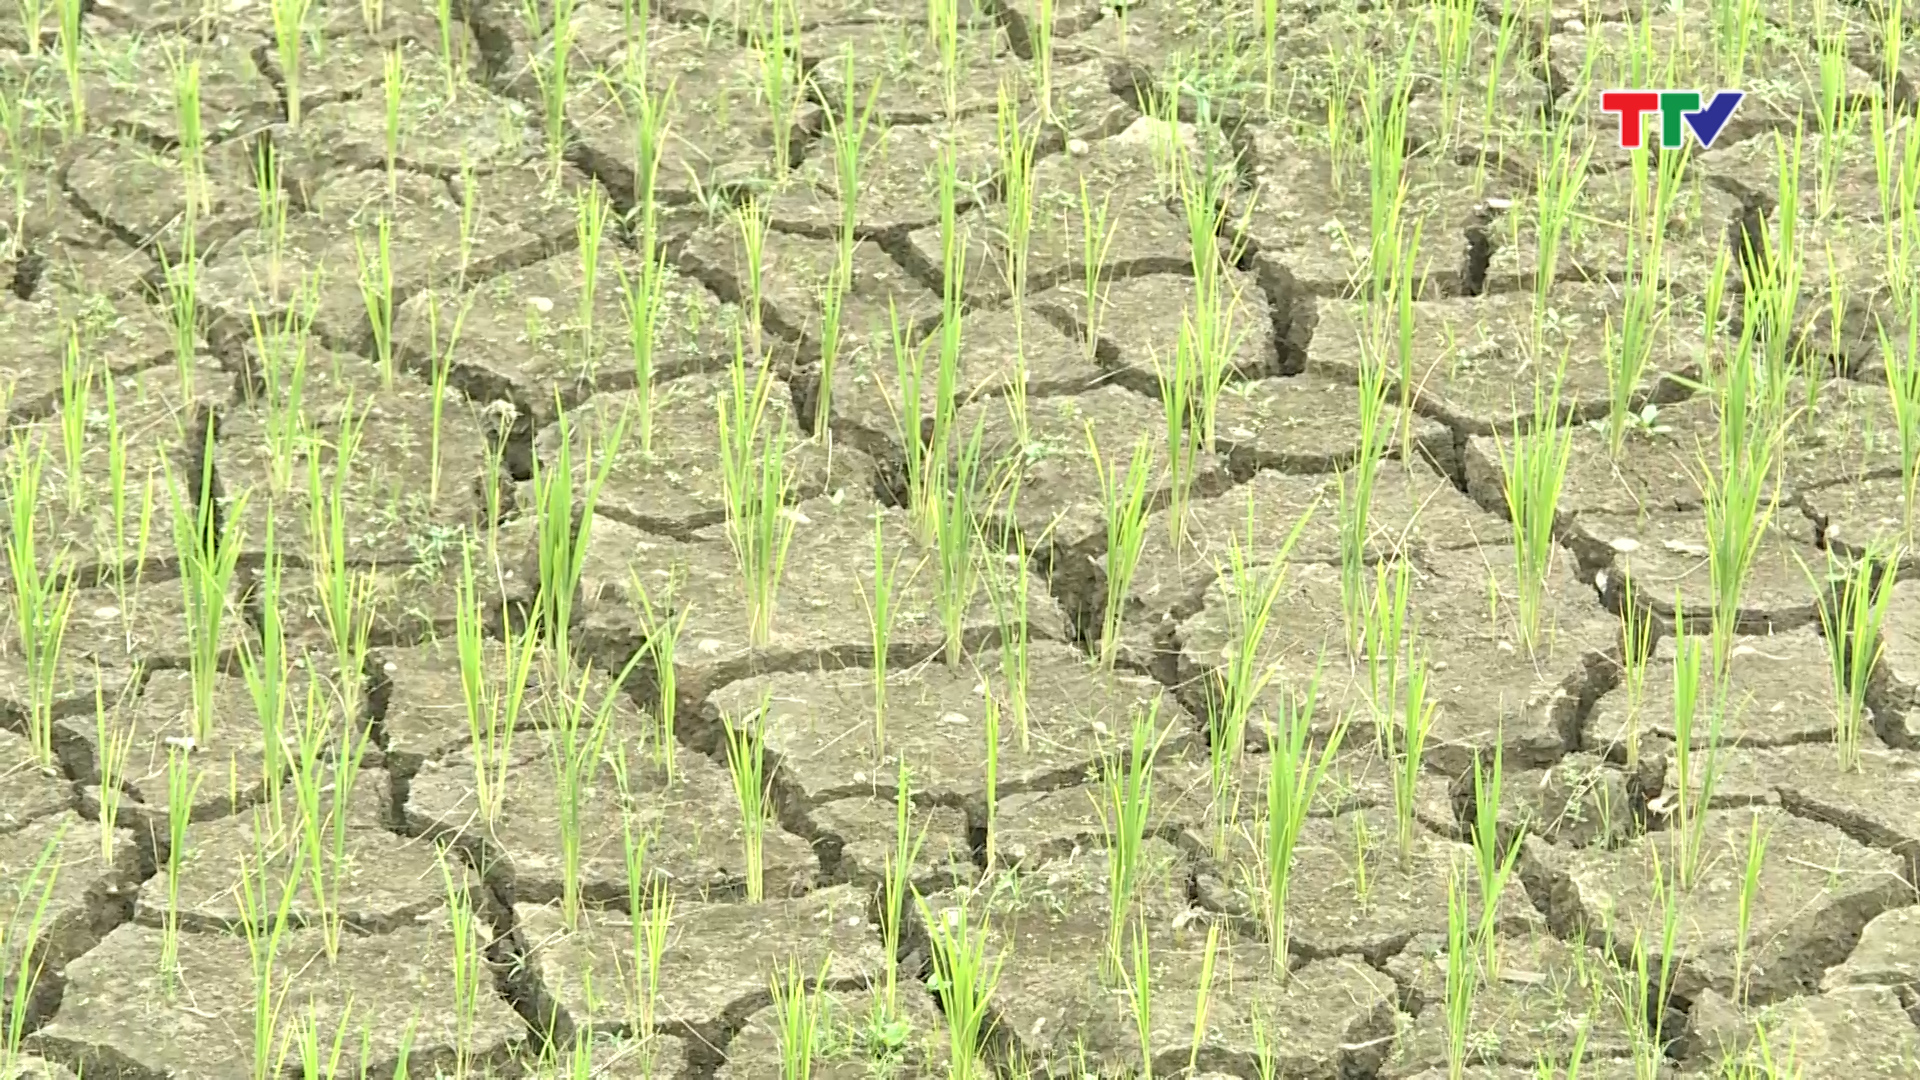 Hiện nay, trên 10 ha lúa vụ chiêm xuân của thôn Chiềng Khạt, xã Đồng Lương huyện Lang Chánh đã bị khô hạn